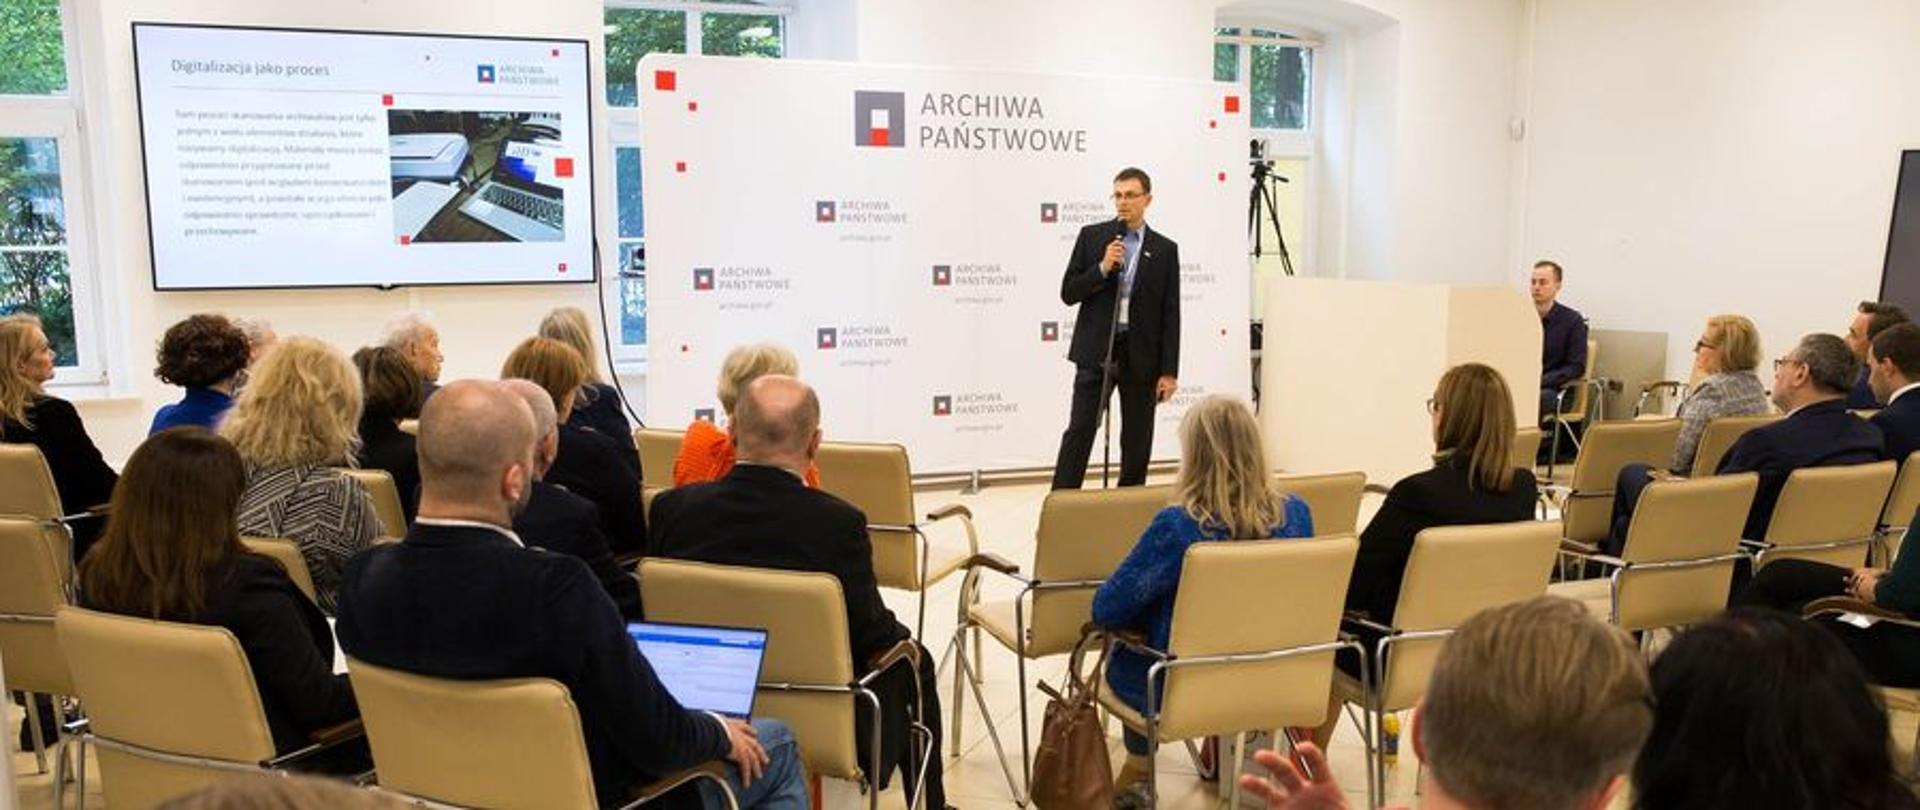 44 sesja Stałej Konferencji Muzeów, Archiwów i Bibliotek Polskich na Zachodzie